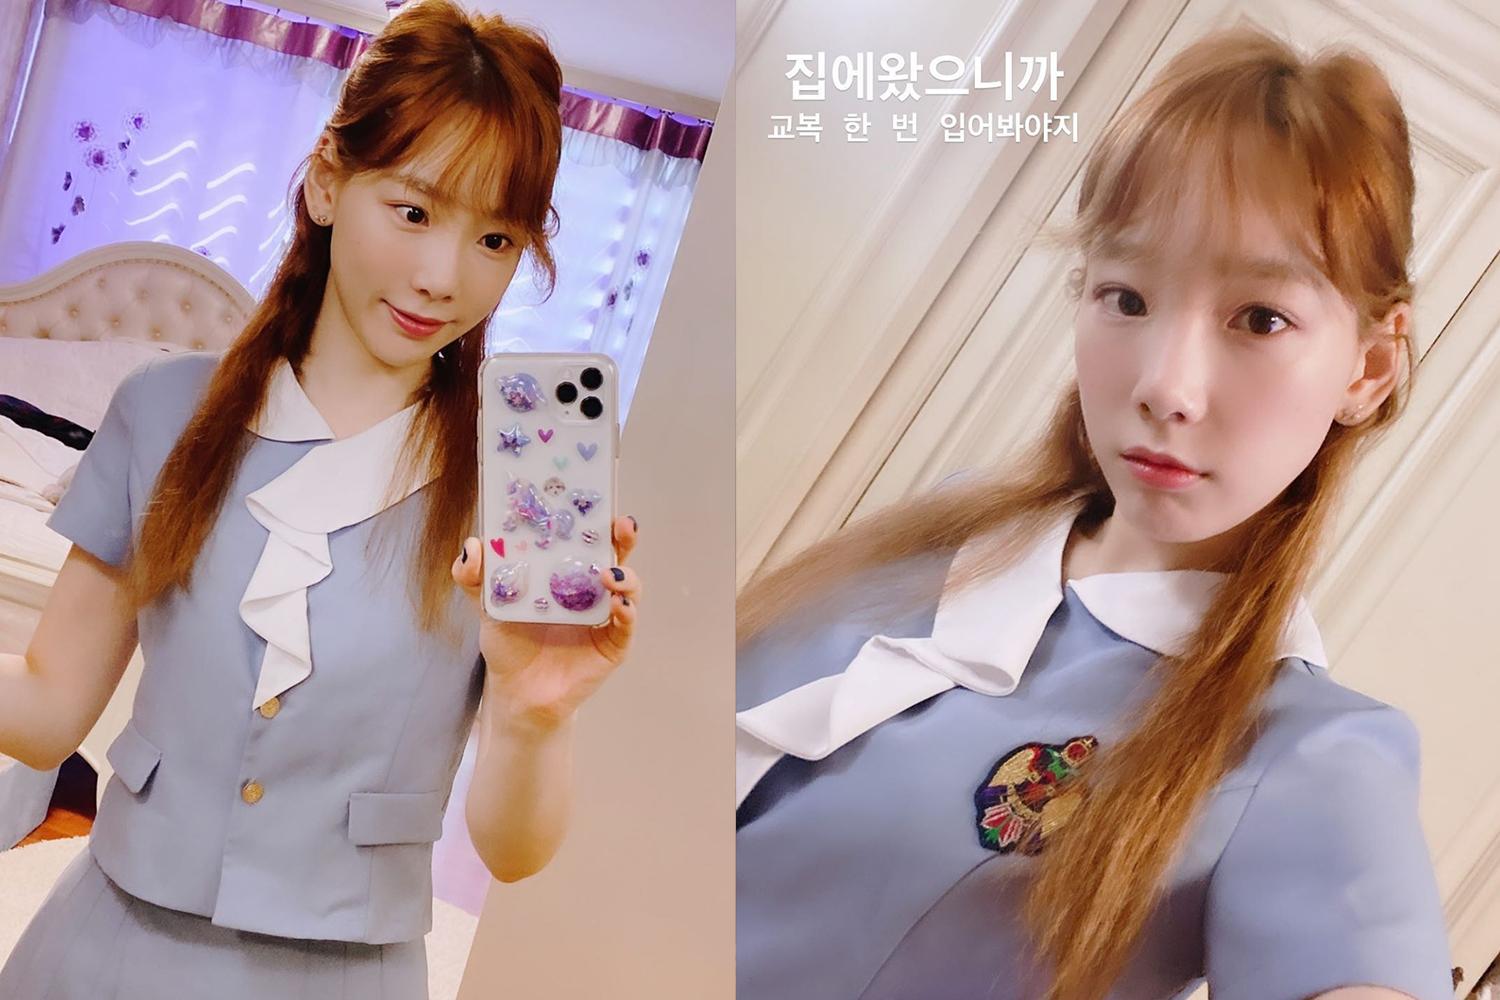 đồng phục học sinh hàn quốc trường trung học nghệ thuật jeonju taeyeon